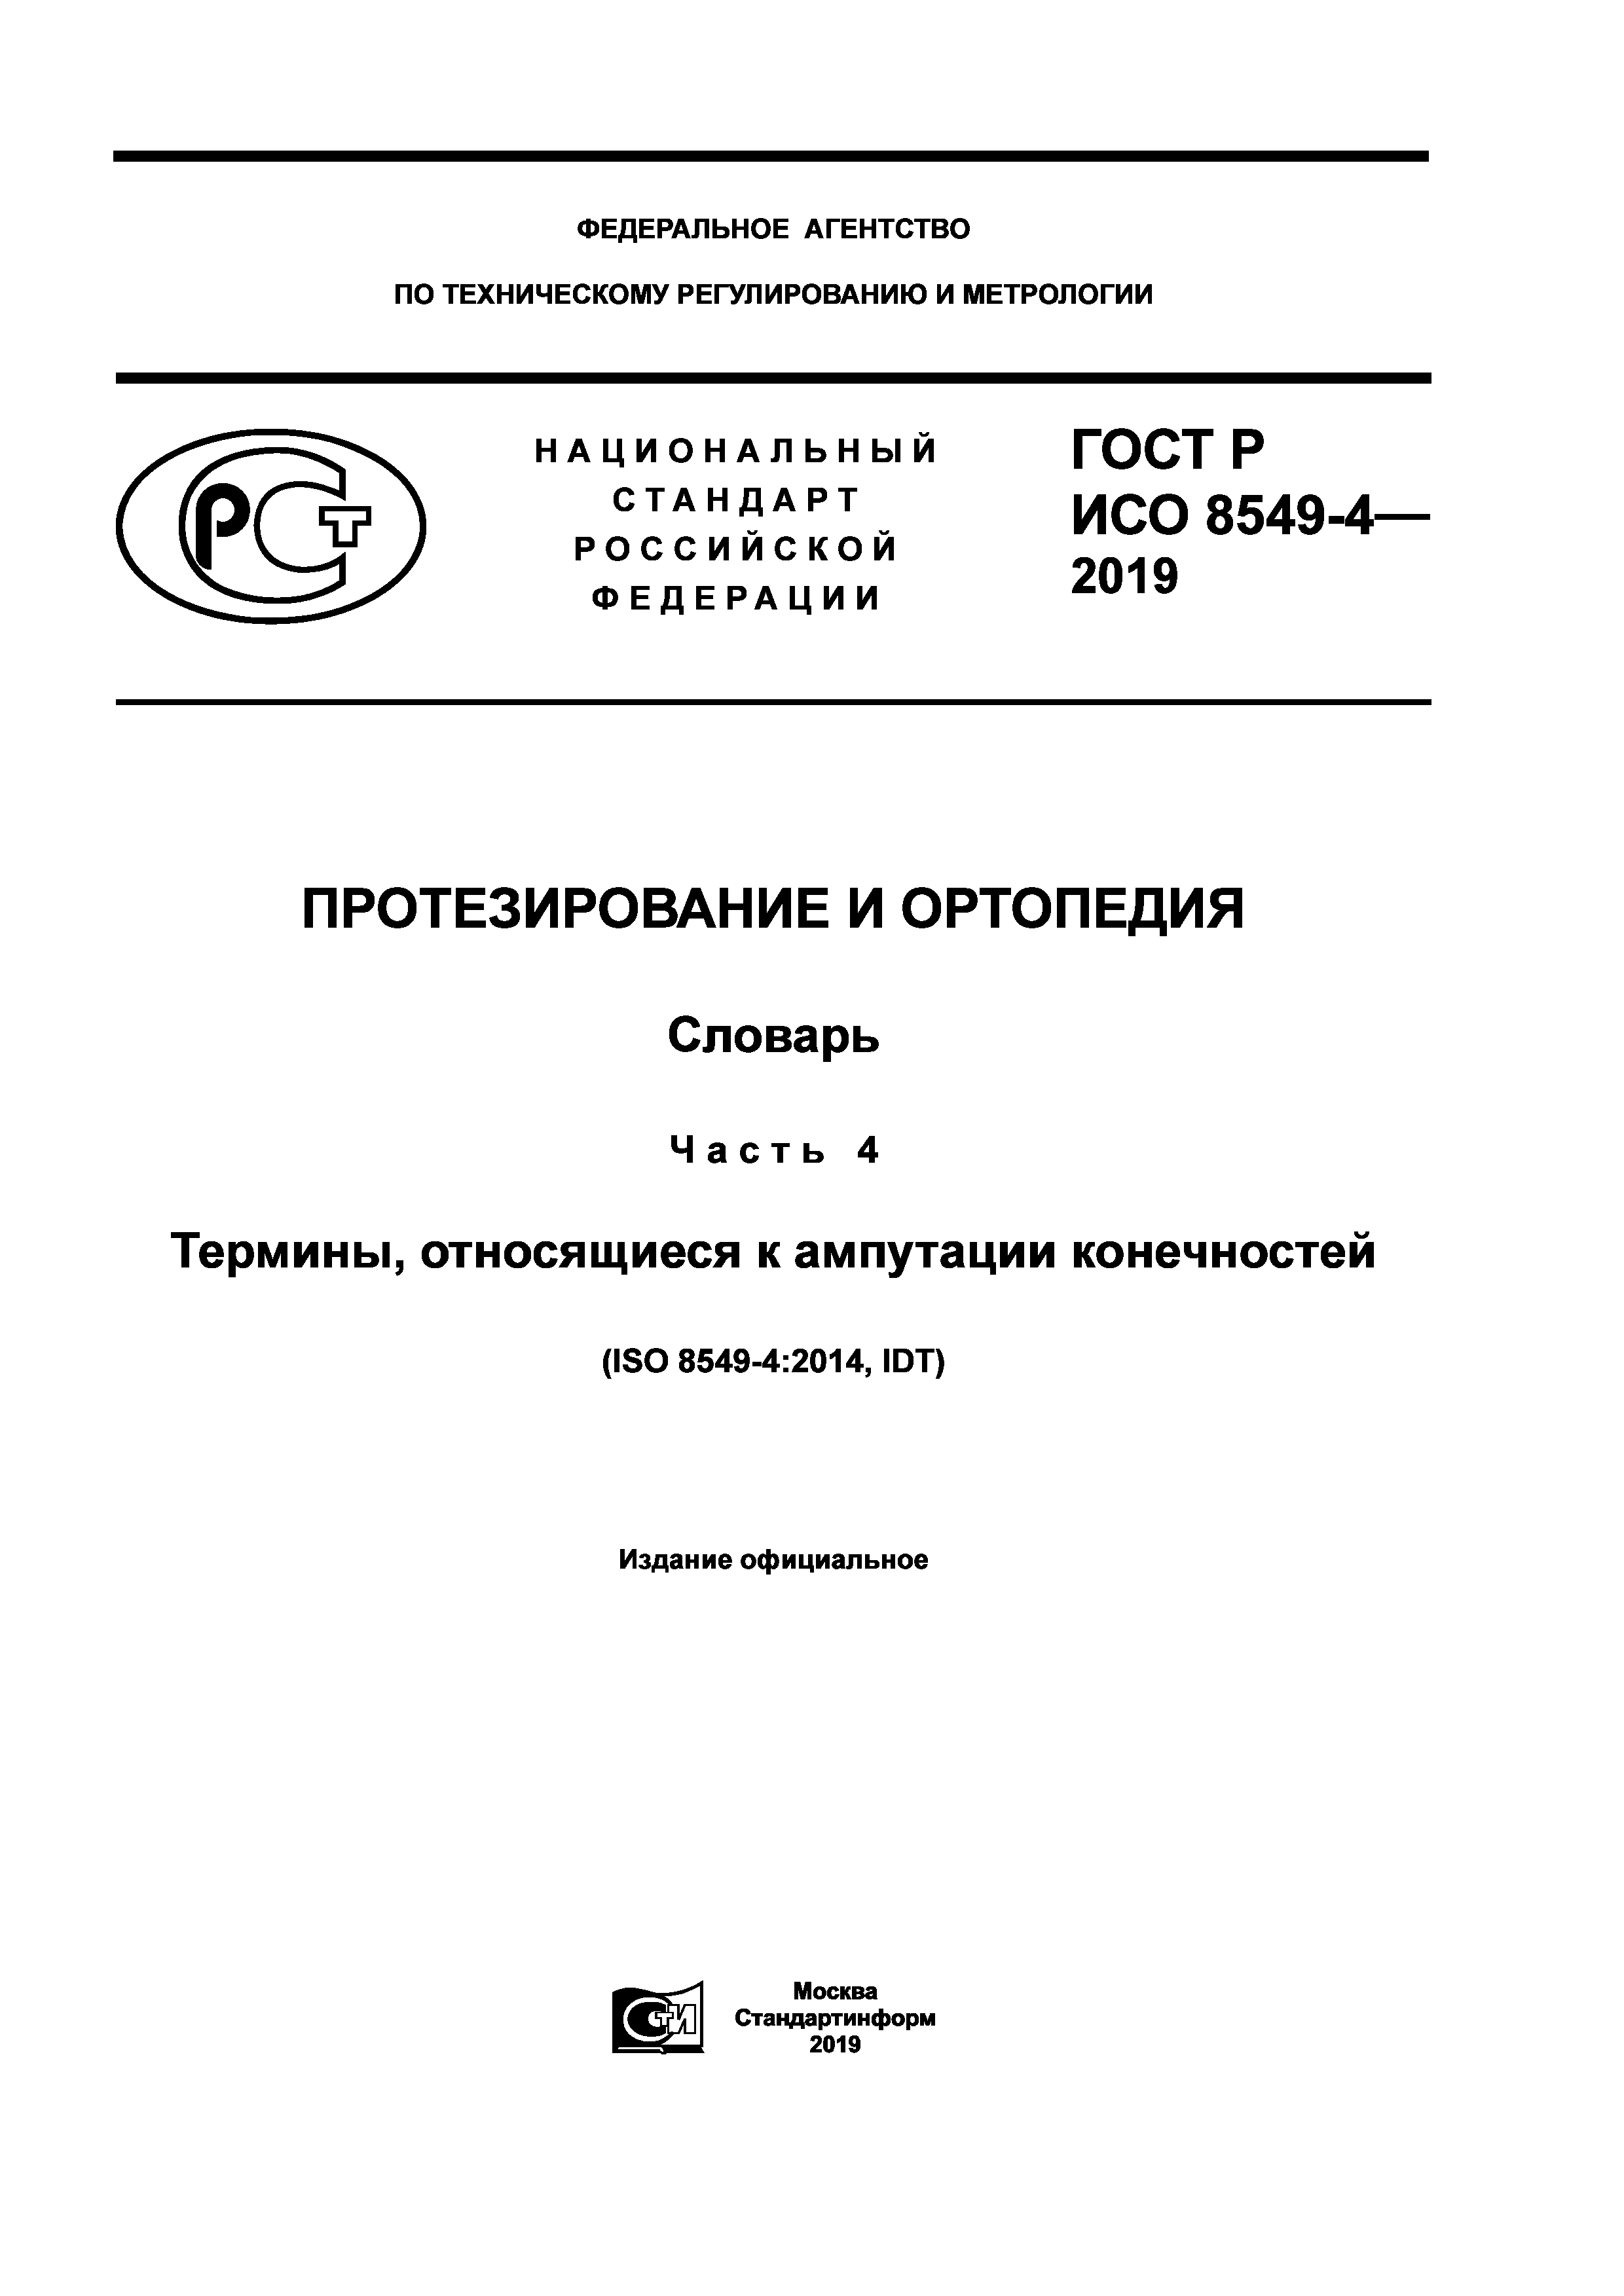 ГОСТ Р ИСО 8549-4-2019